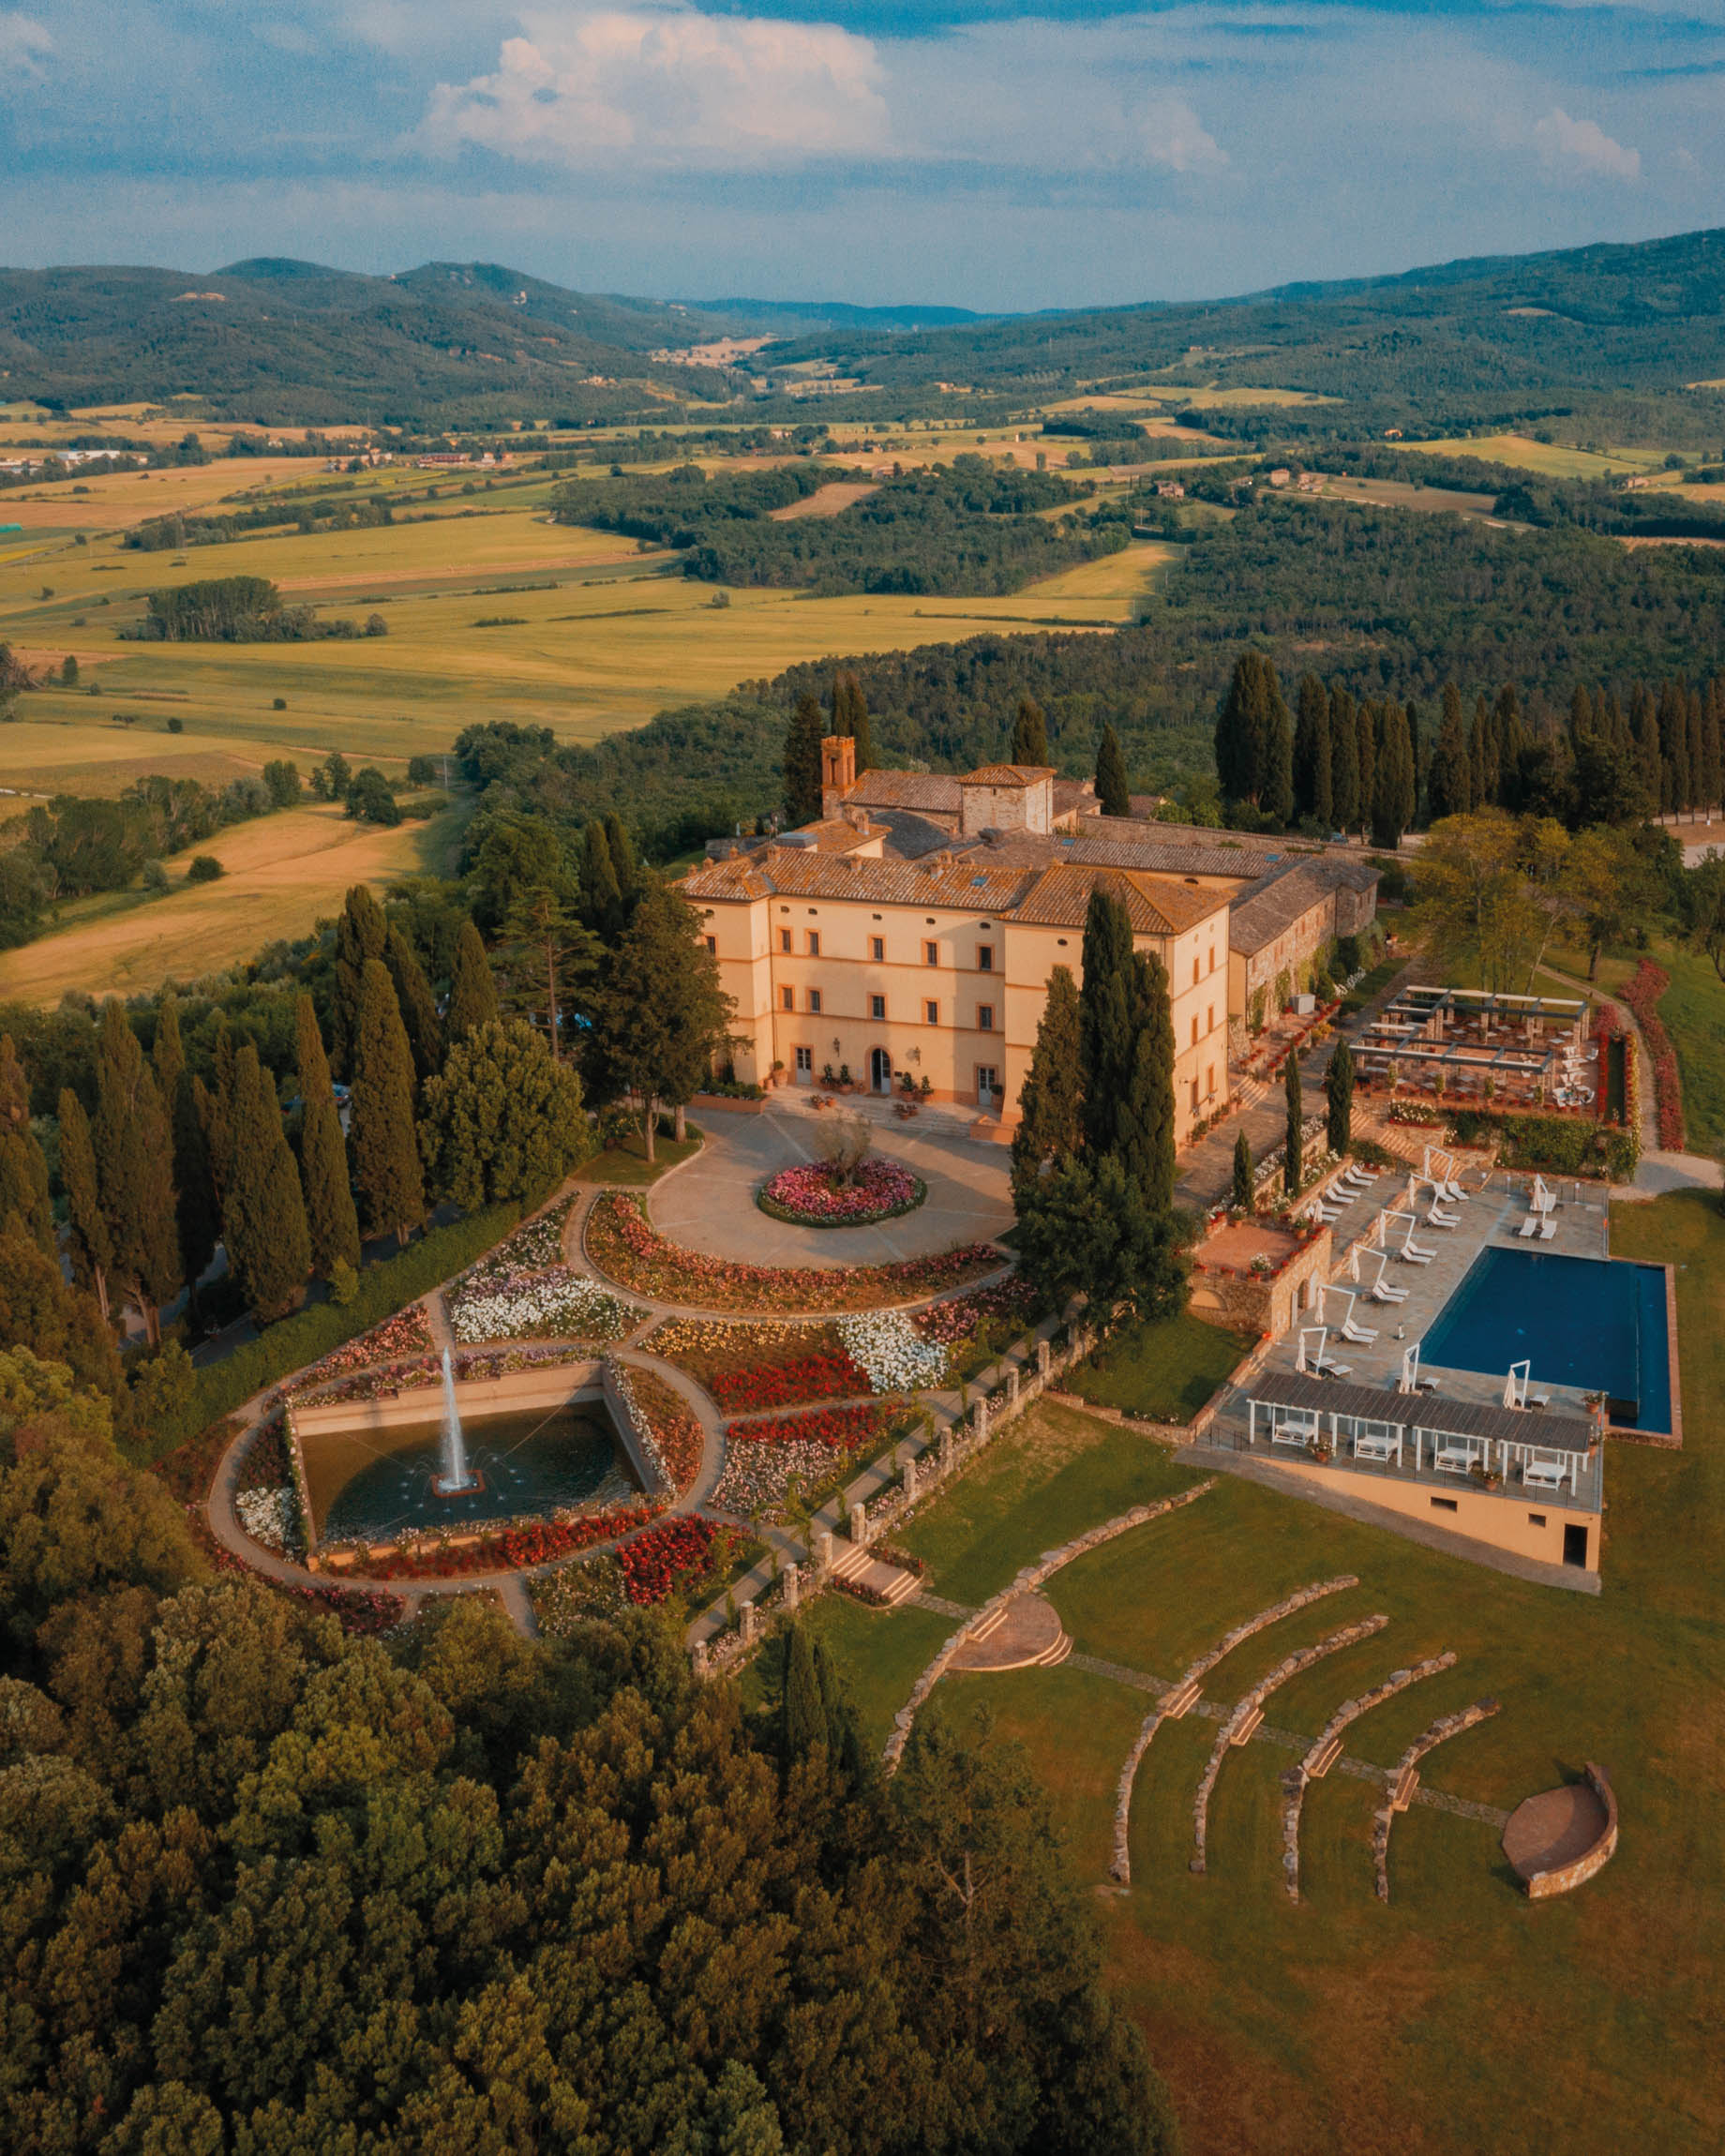 Castello di Casole, A Belmond Hotel, Tuscany - Casole d'Elsa, Italy